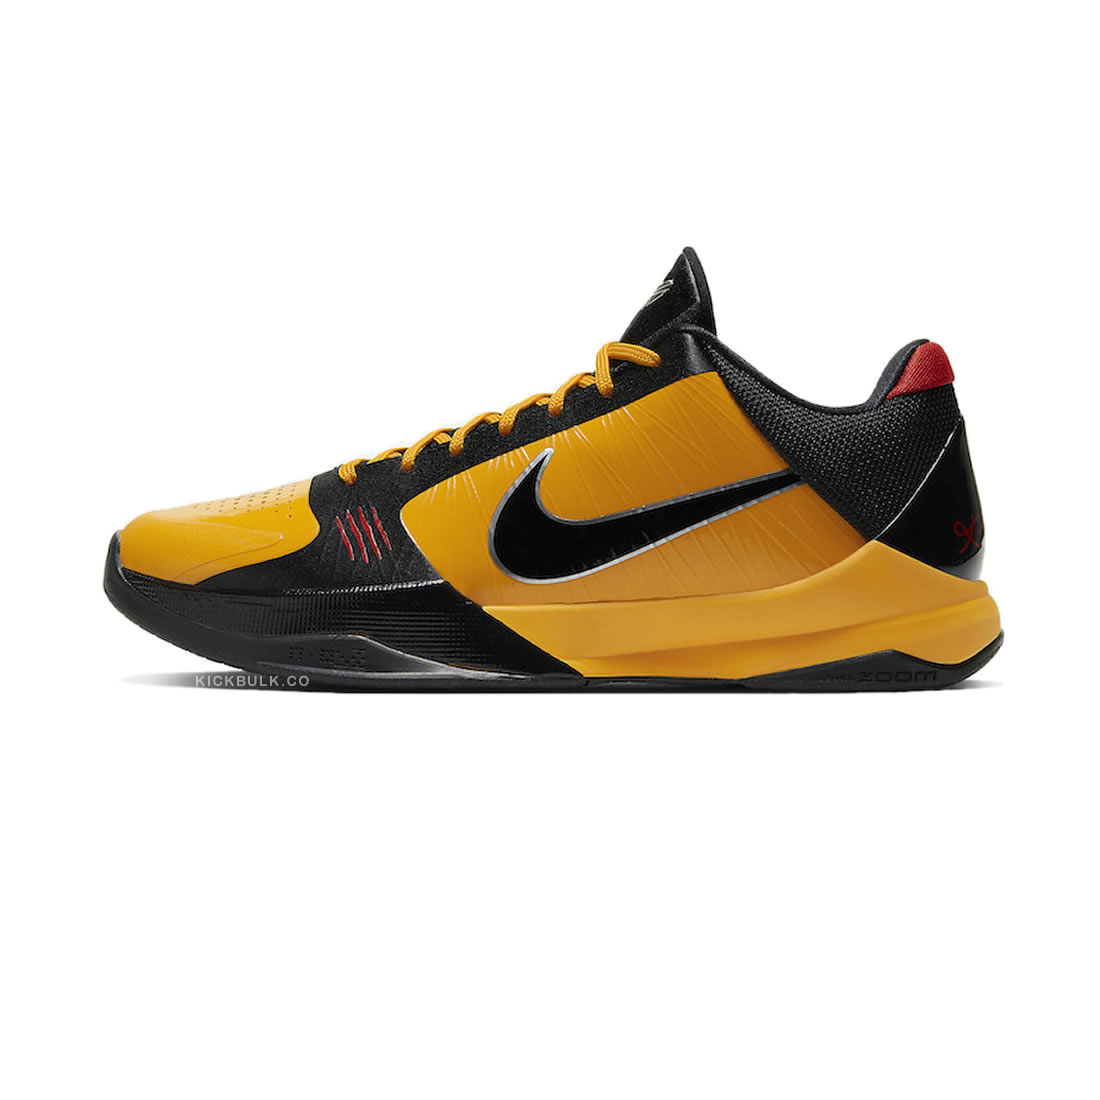 Nike Zoom Kobe 5 Protro Bruce Lee Cd4991 700 1 - www.kickbulk.cc